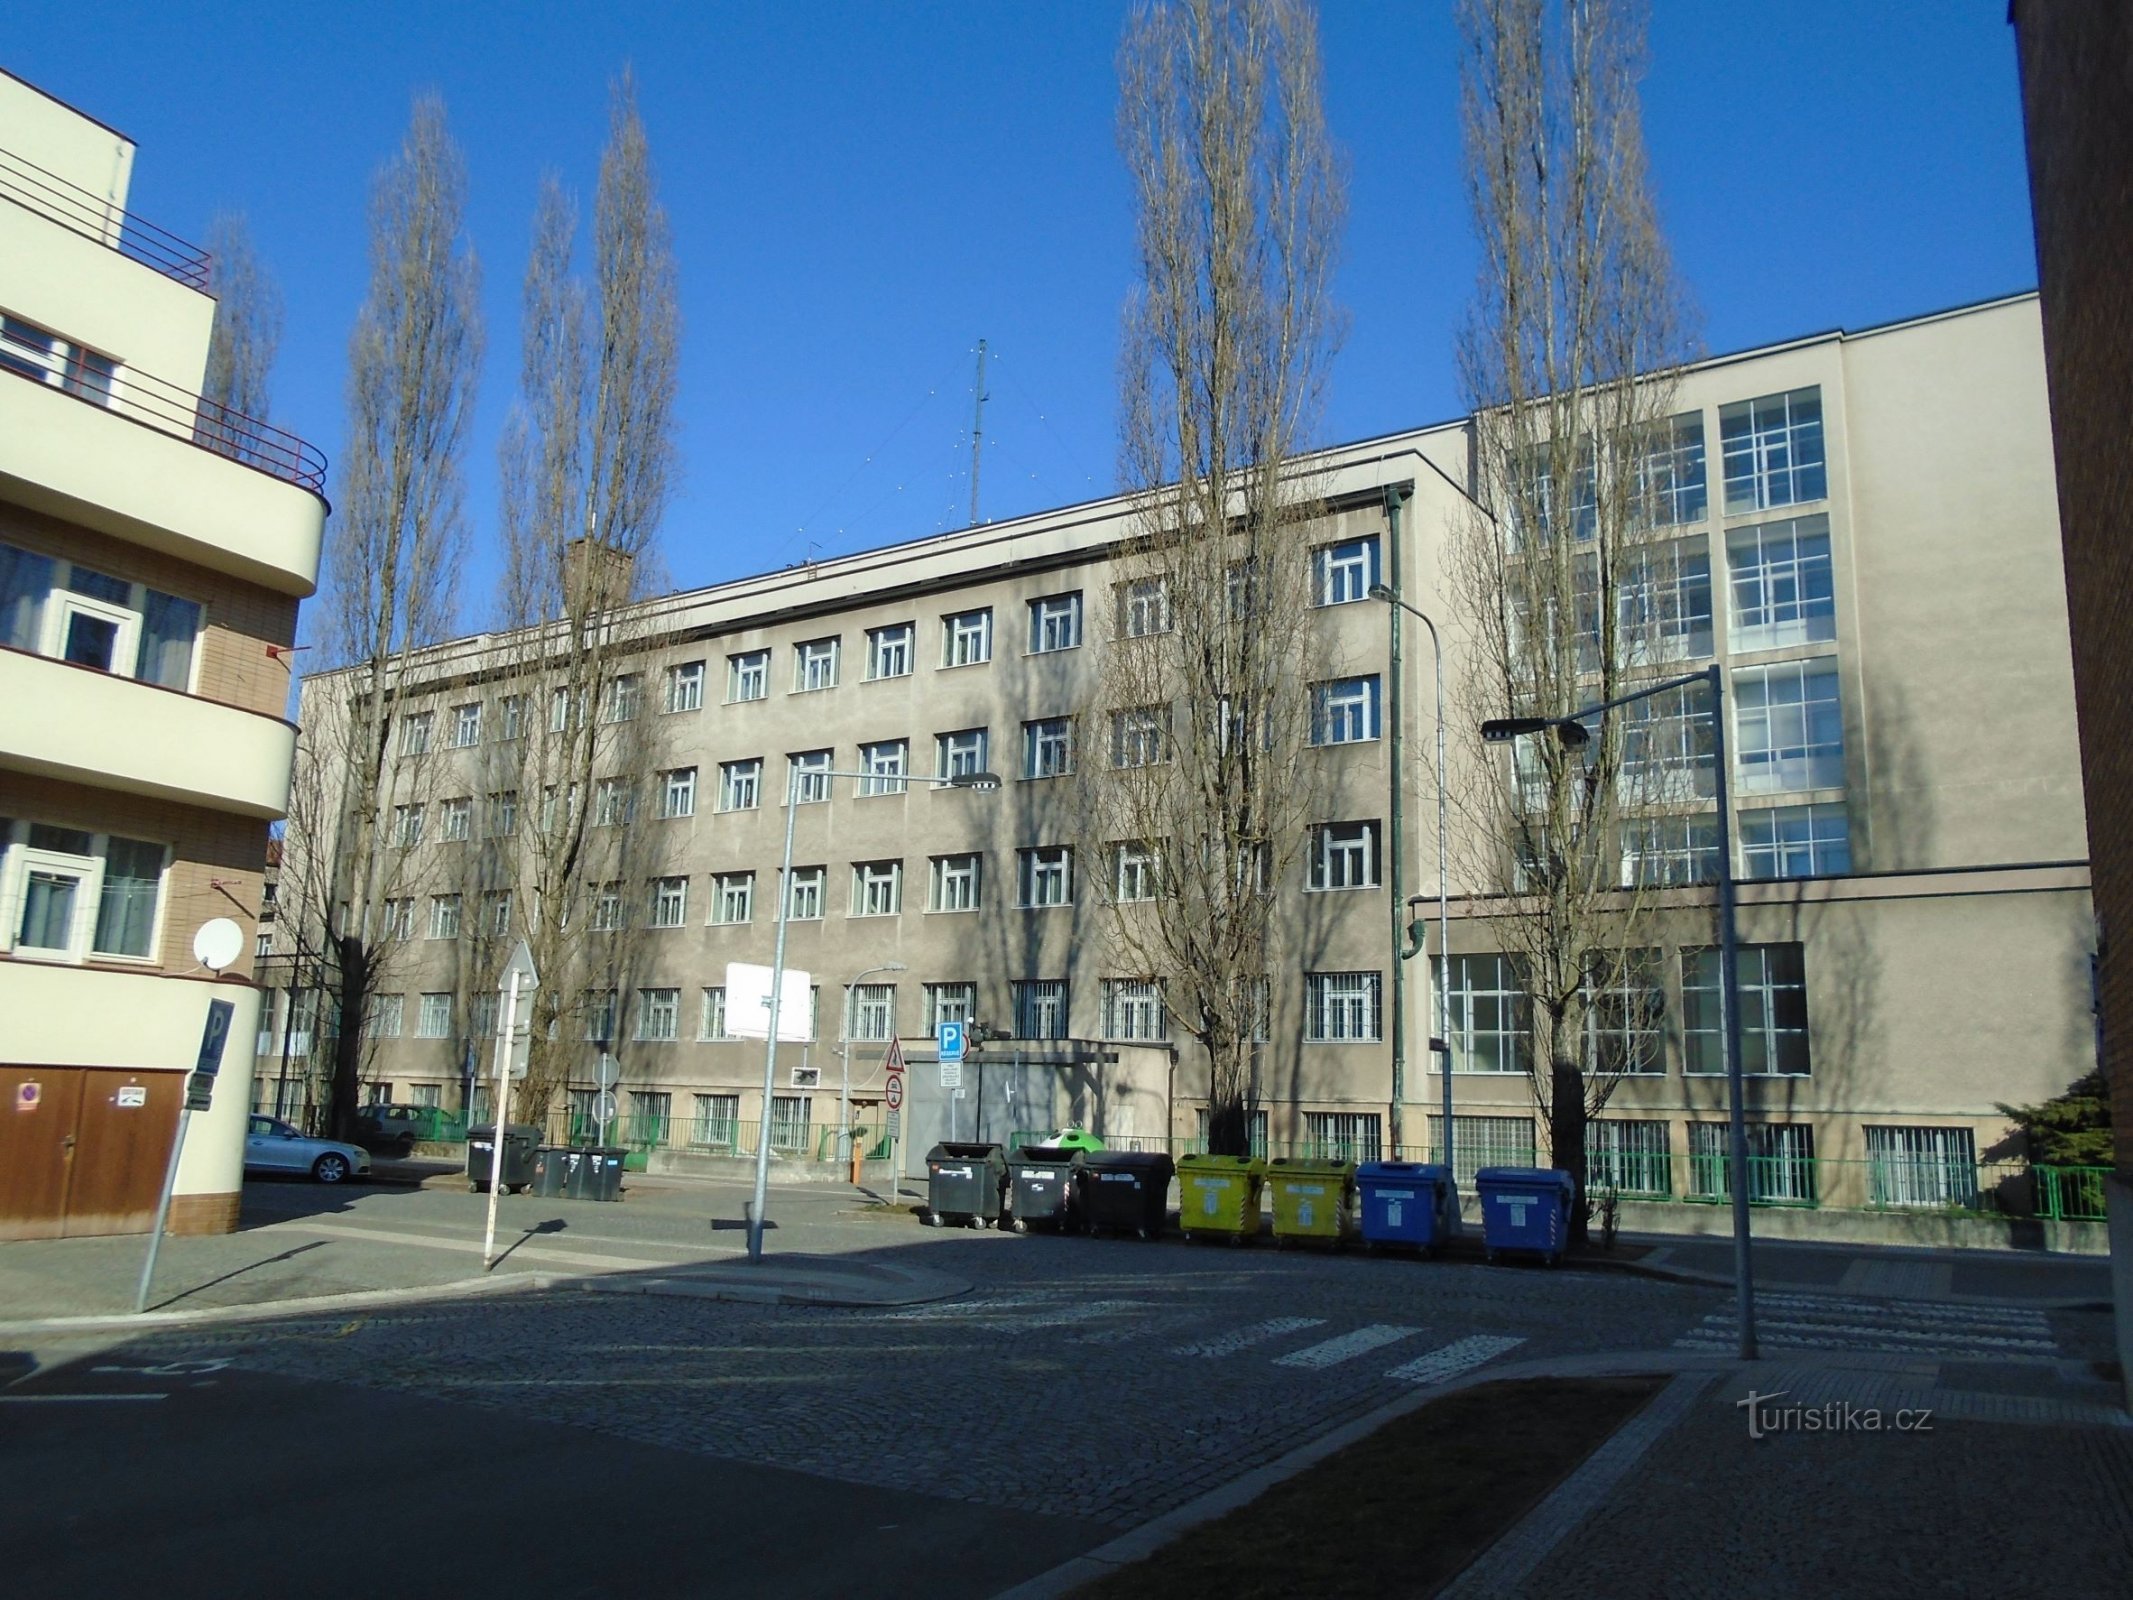 Ulrichovo náměstí No. 810 (Hradec Králové, 25.2.2018.)